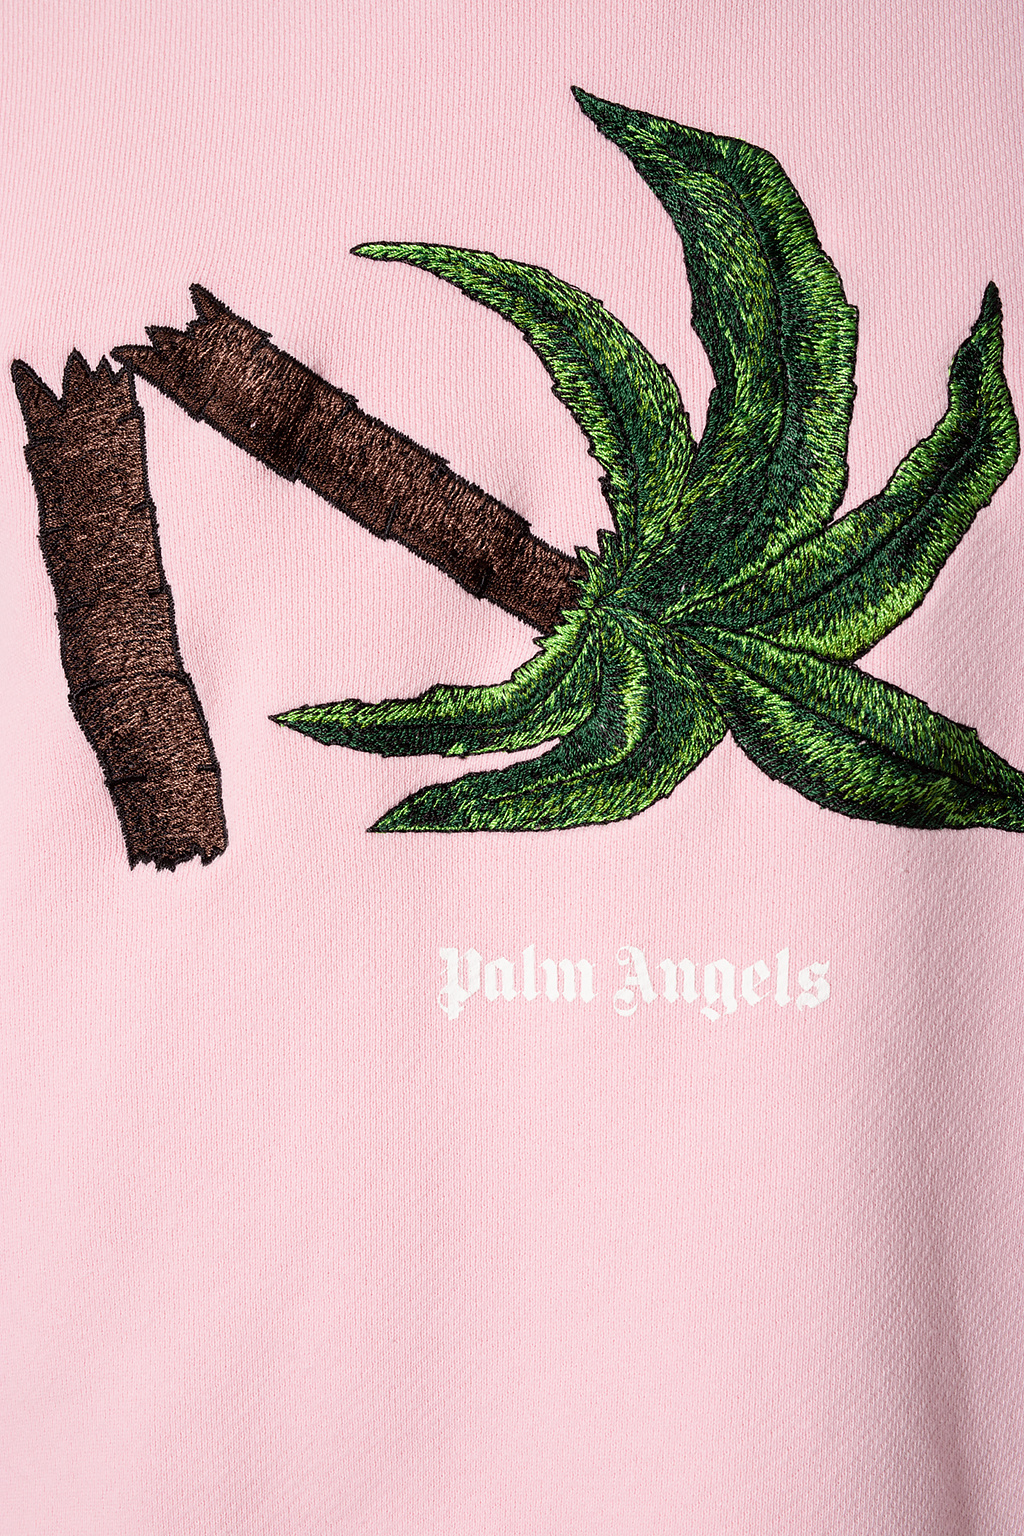 Palm Angels Koché slogan print T-shirt